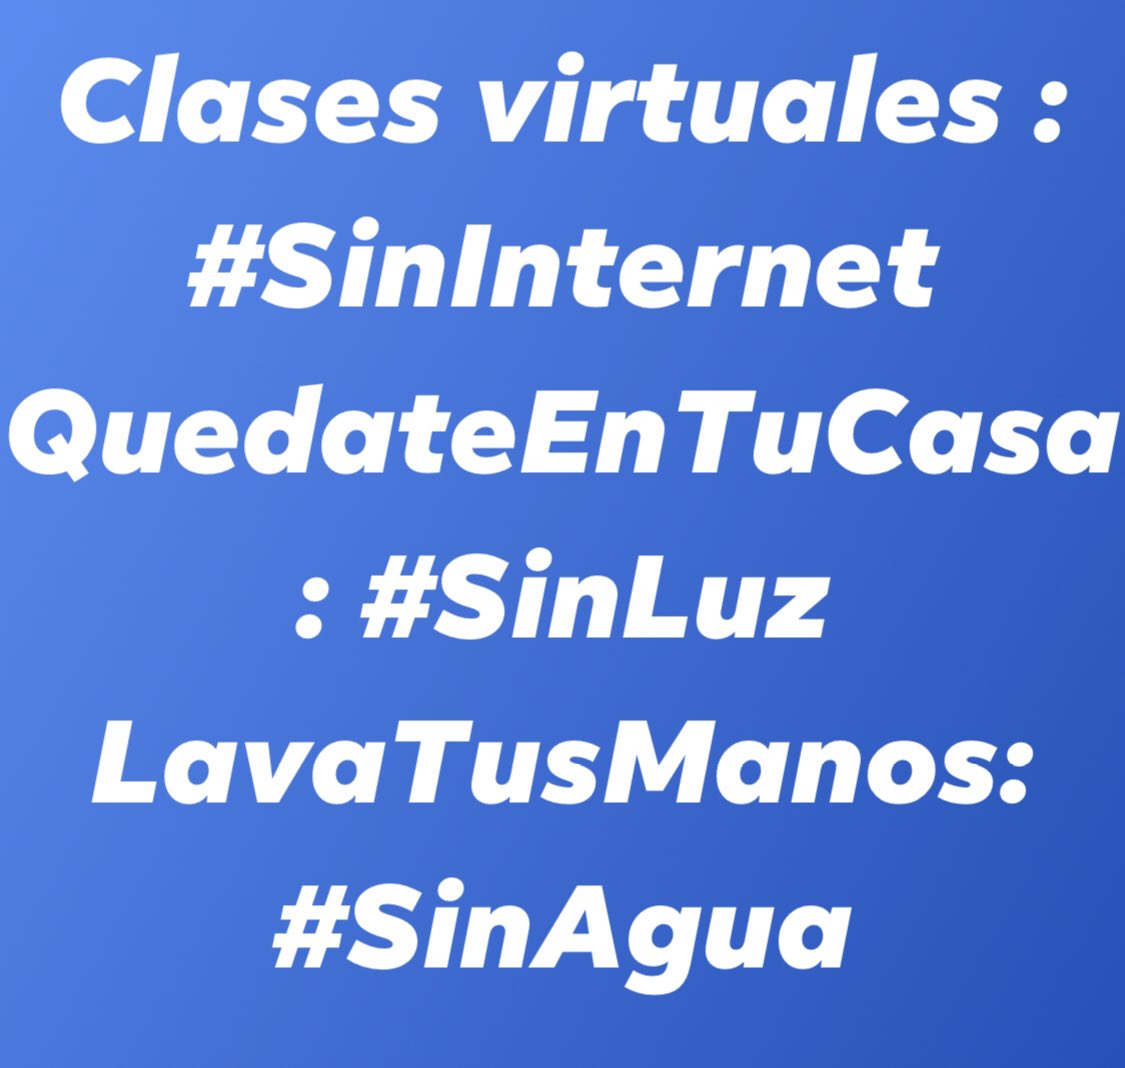 #SemanaRadical ⤵️
Clases virtuales : #SinInternet
QuedateEnTuCasa: #SinLuz
LavaTusManos: #SinAgua